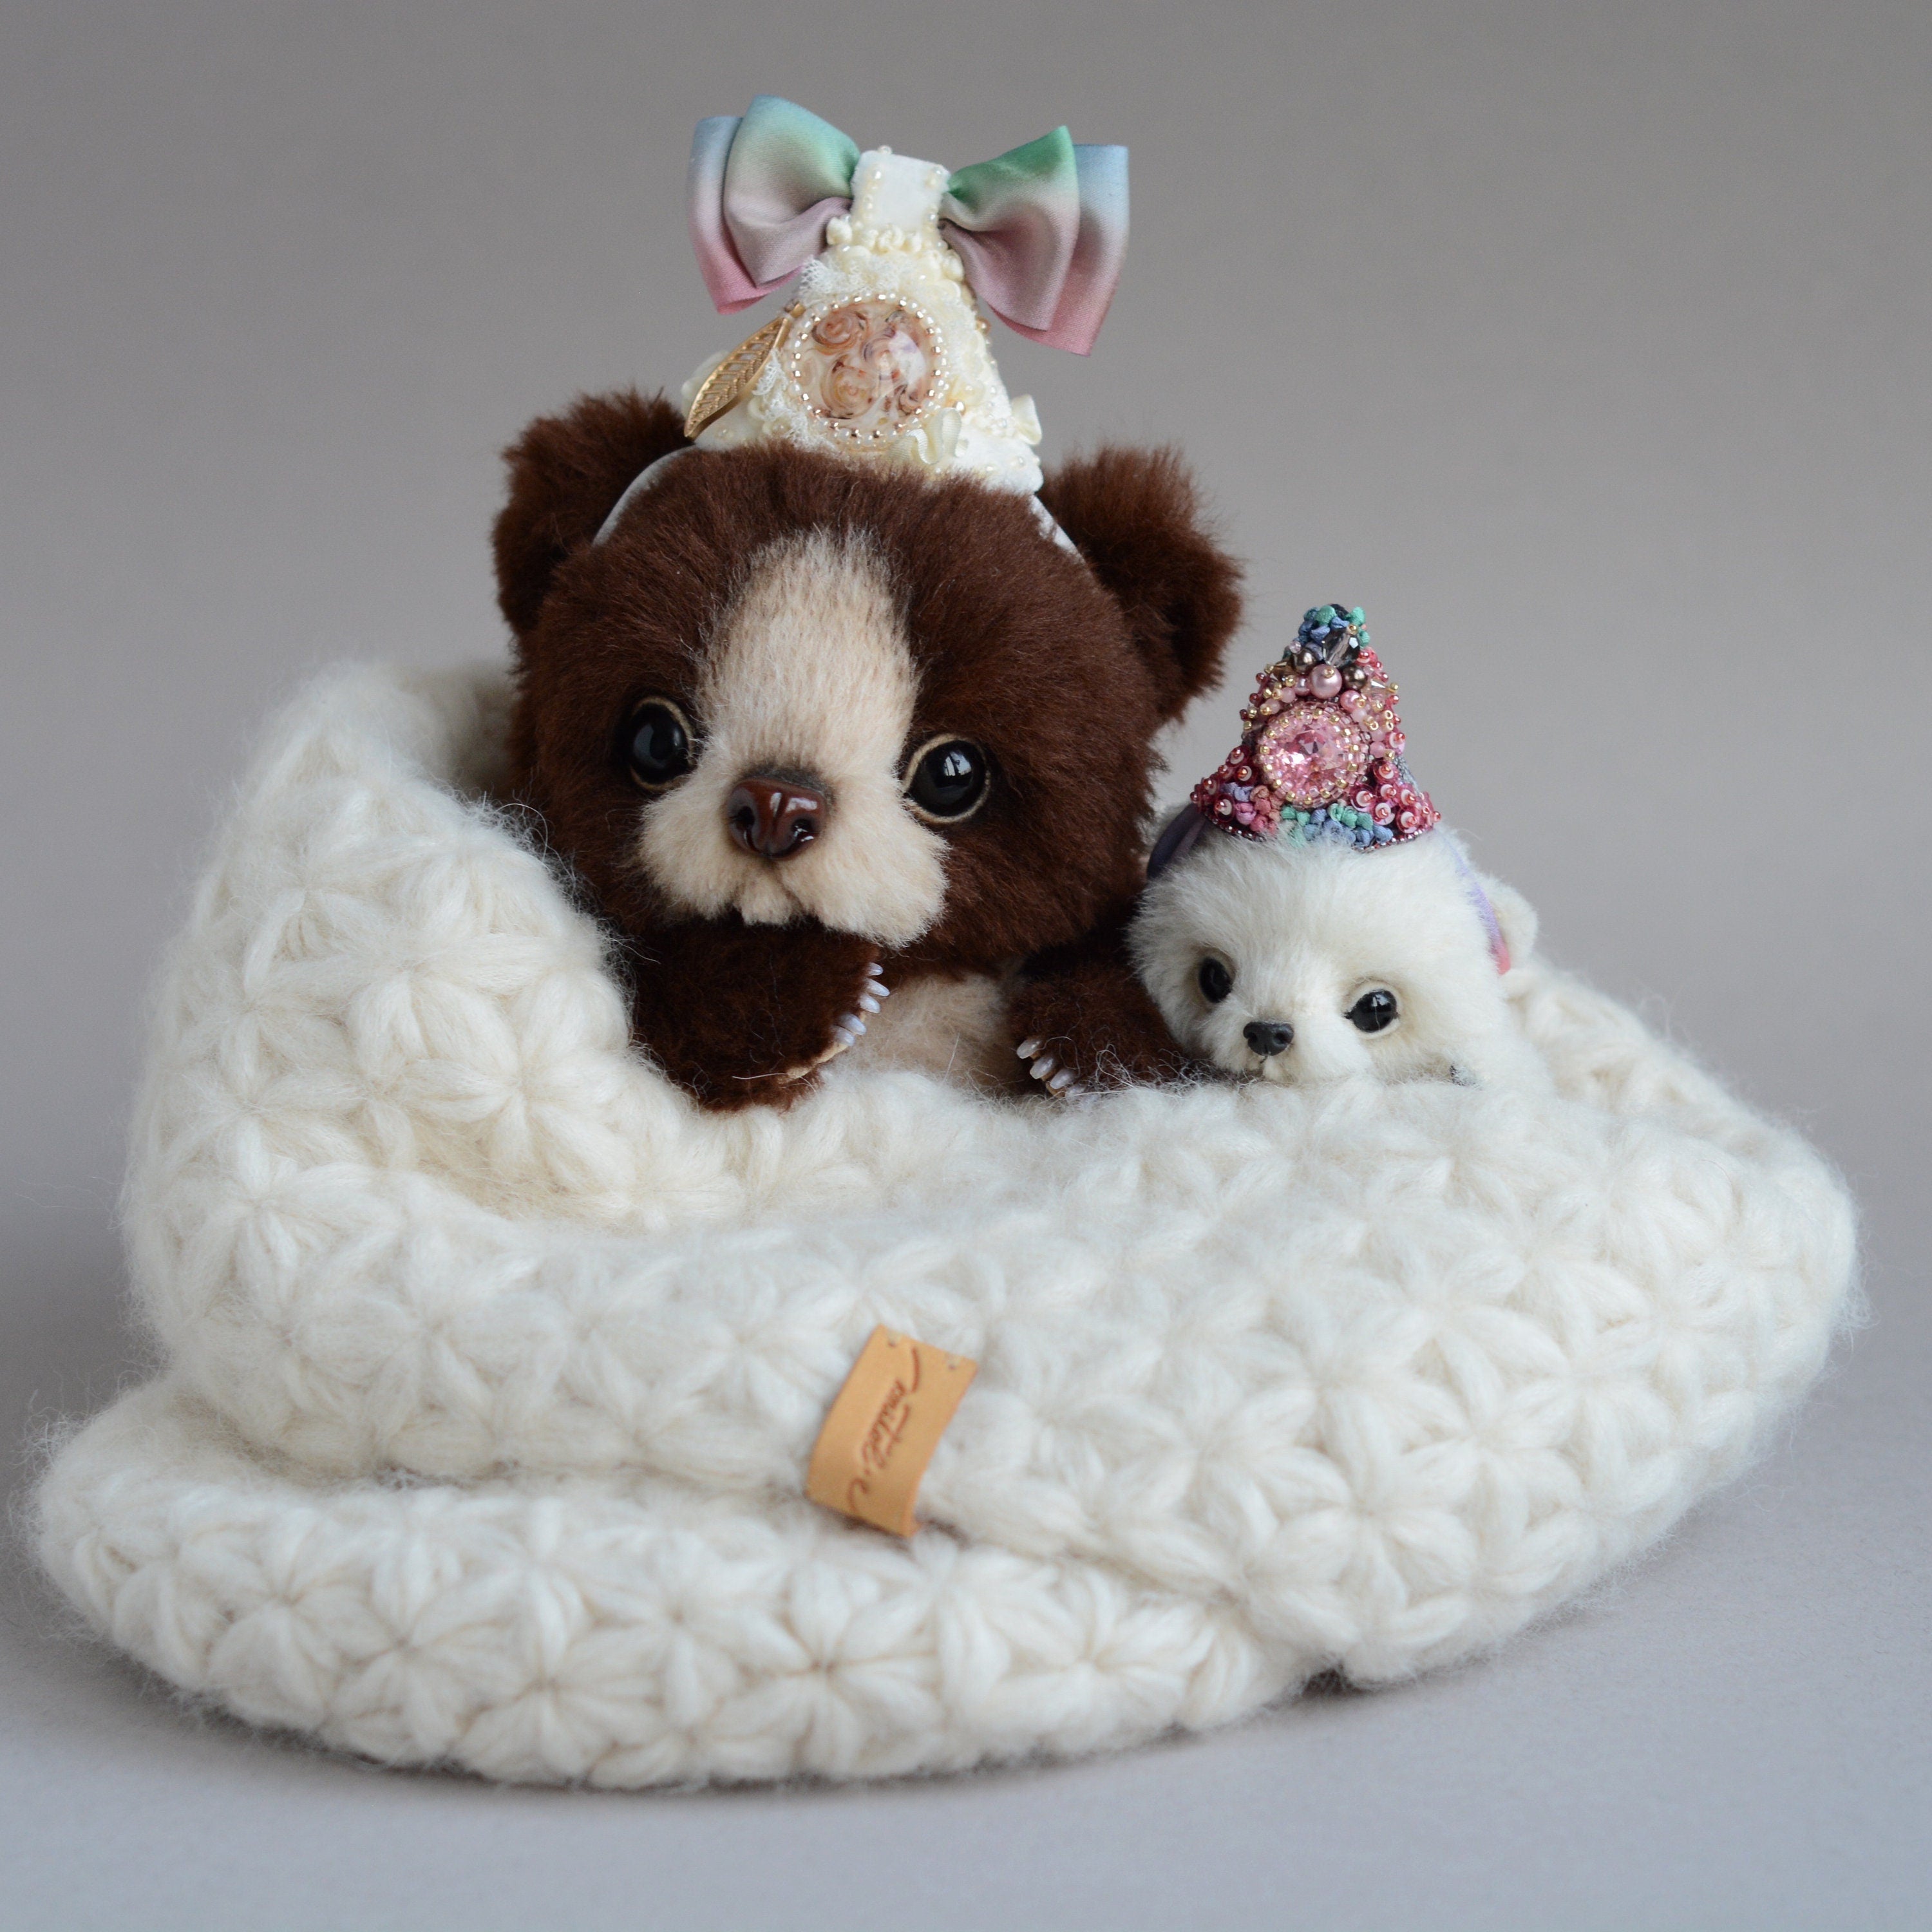 Sewing PATTERN PDF Mohair Alpaca bear, by Tatiana Scalozub, how to make teddy teddy bear step by step, diy teddy bear